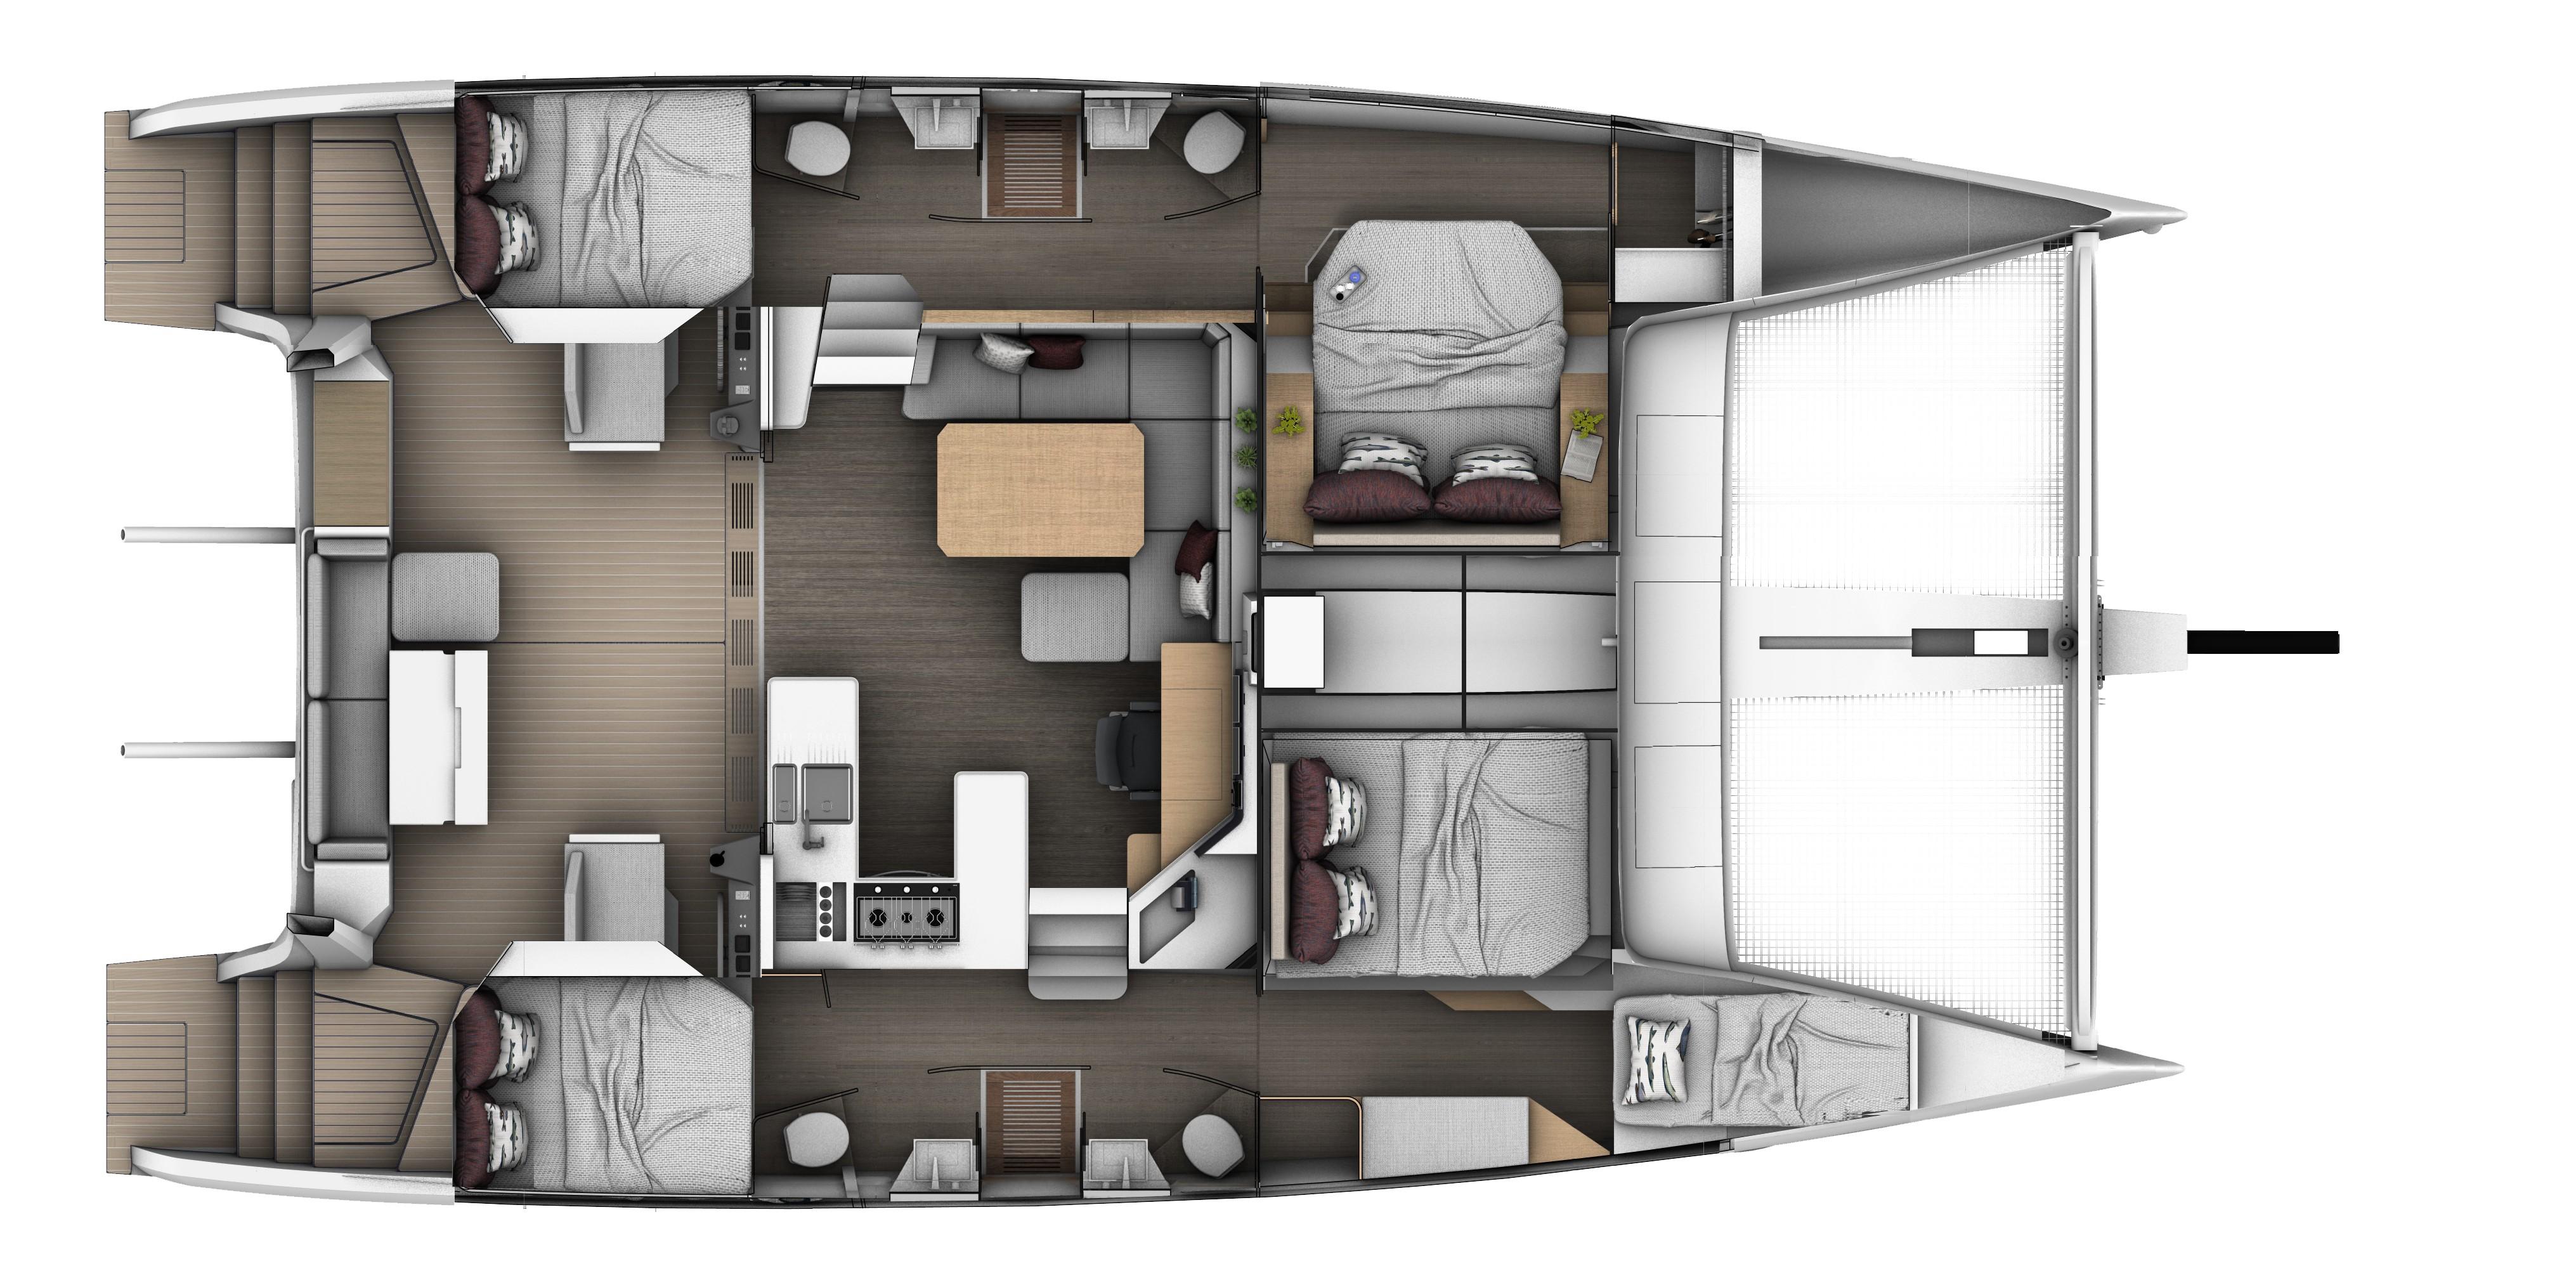 SEAWIND 1370 4 cabin 4 heads layout